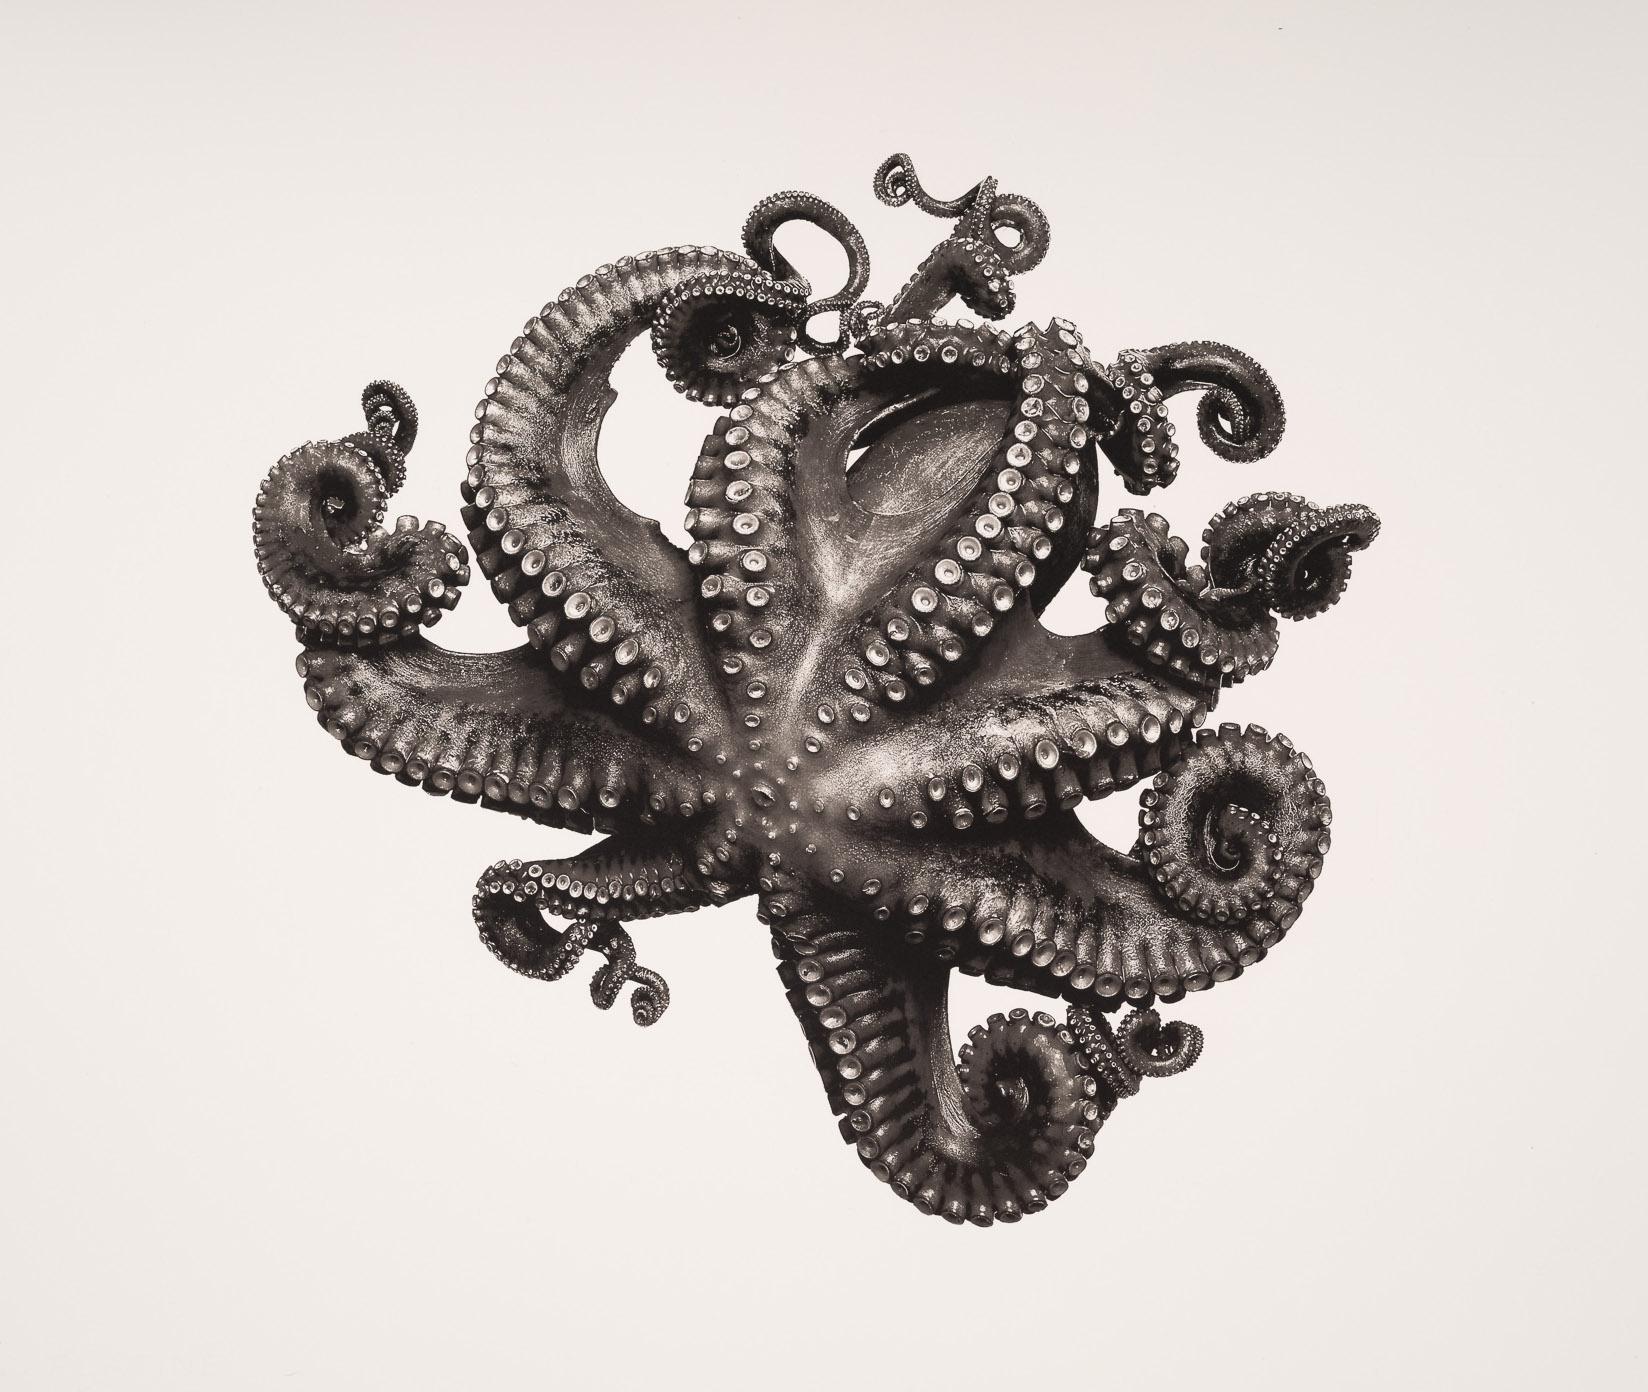 Octopus Vulgaris (Spezialausgabe)